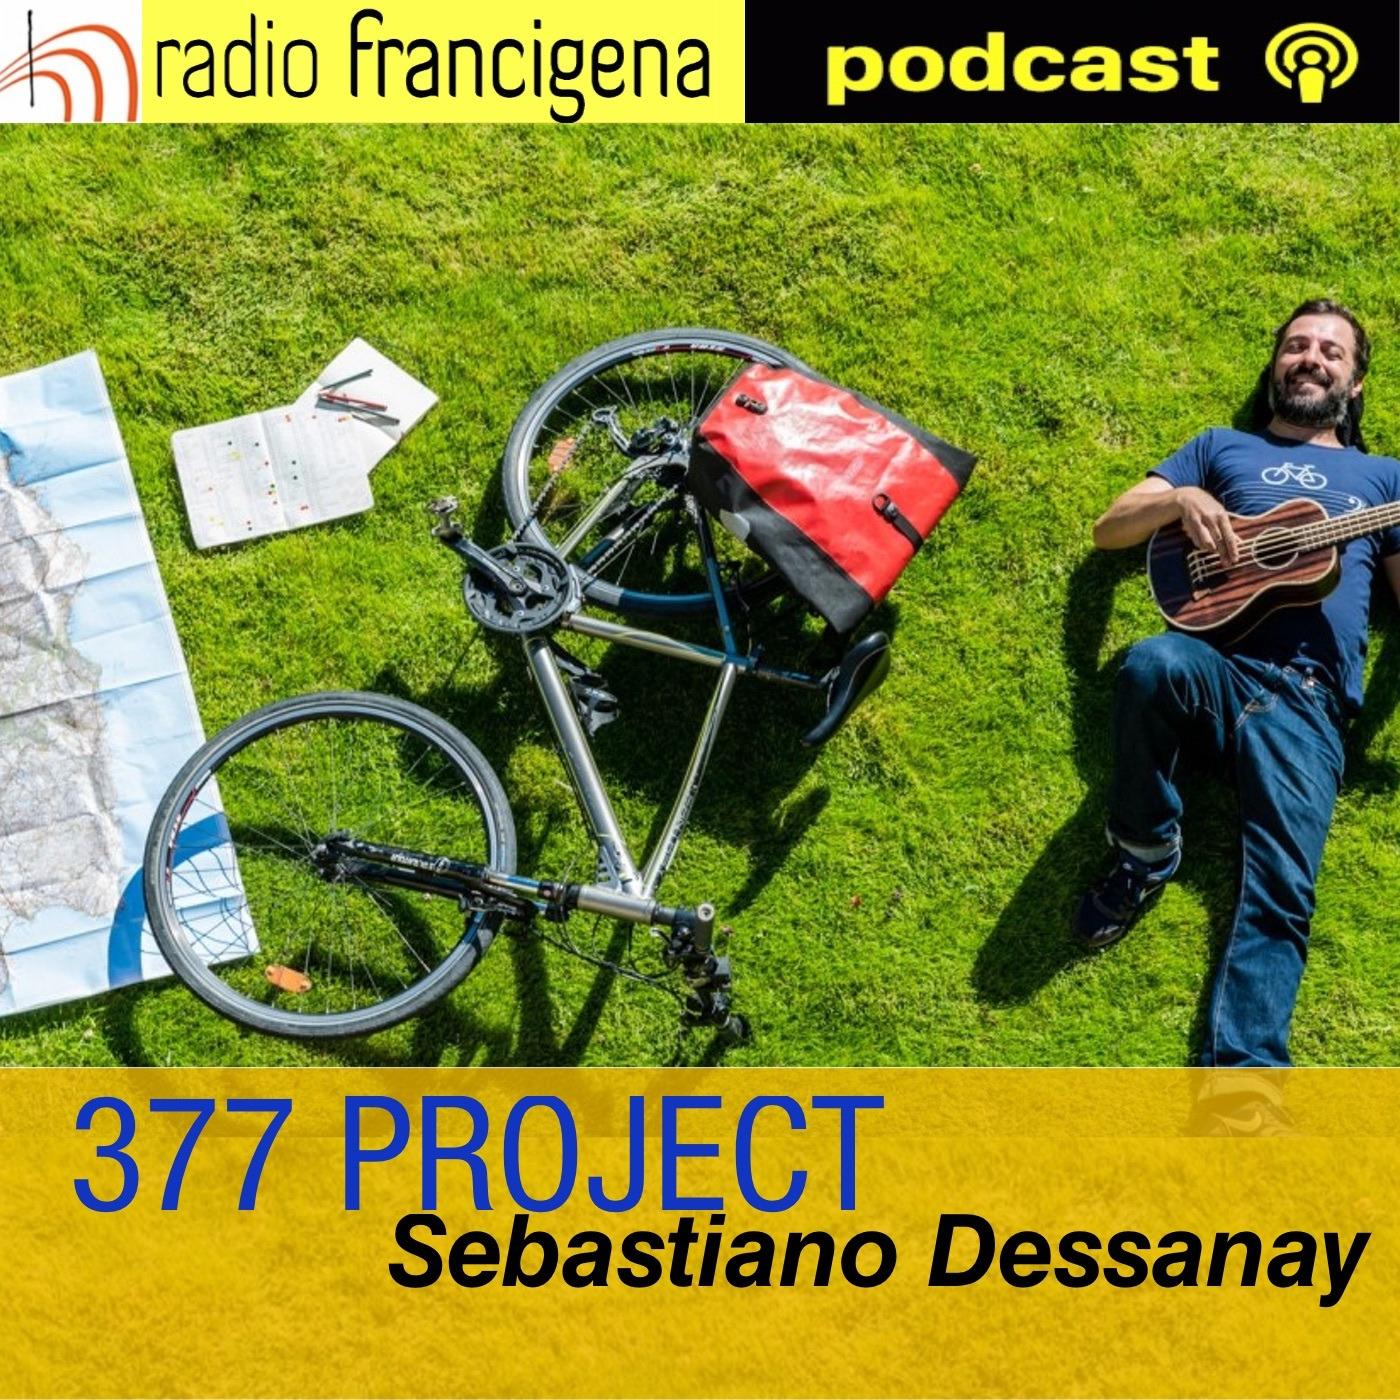 377 PROJECT - Sebastiano Dessanay - 9